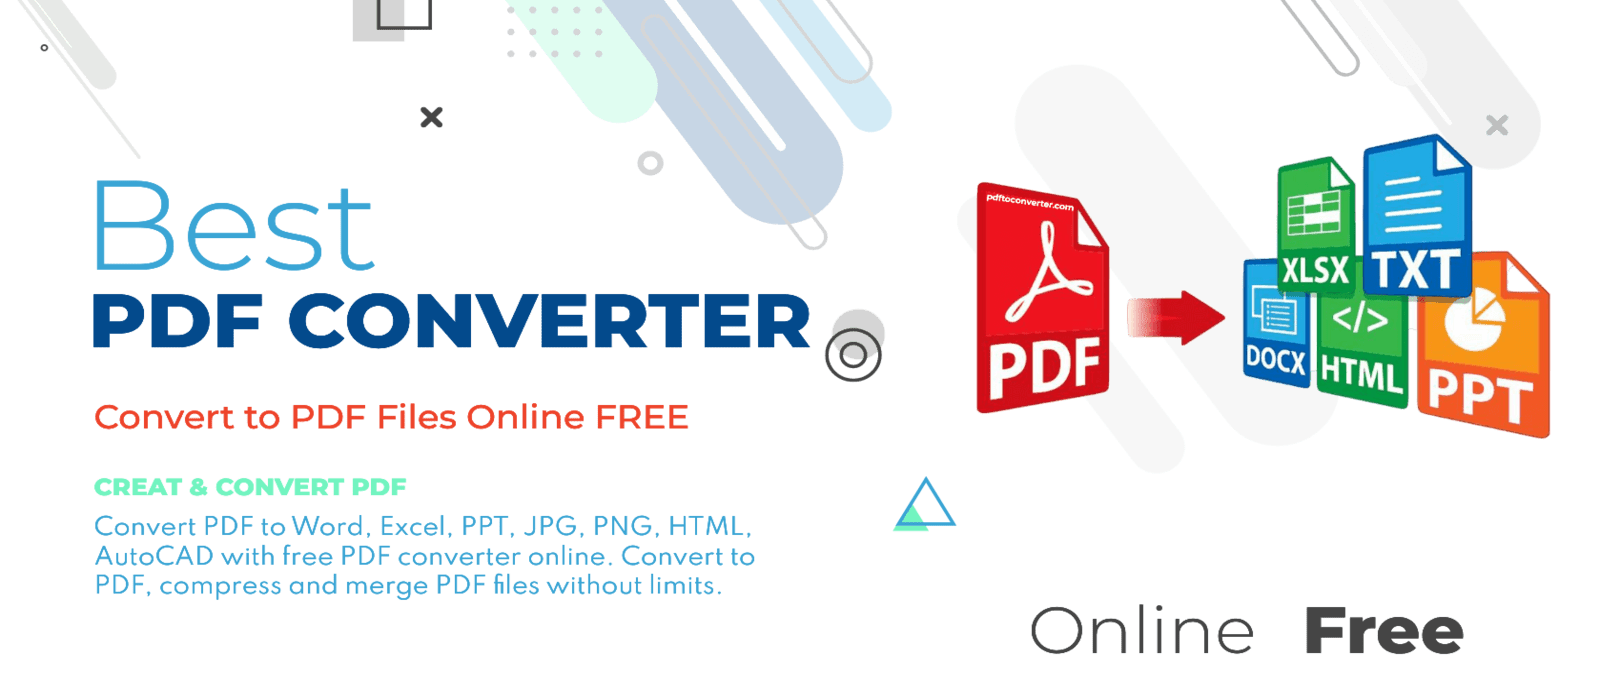 pdfconverter-main-slide-2